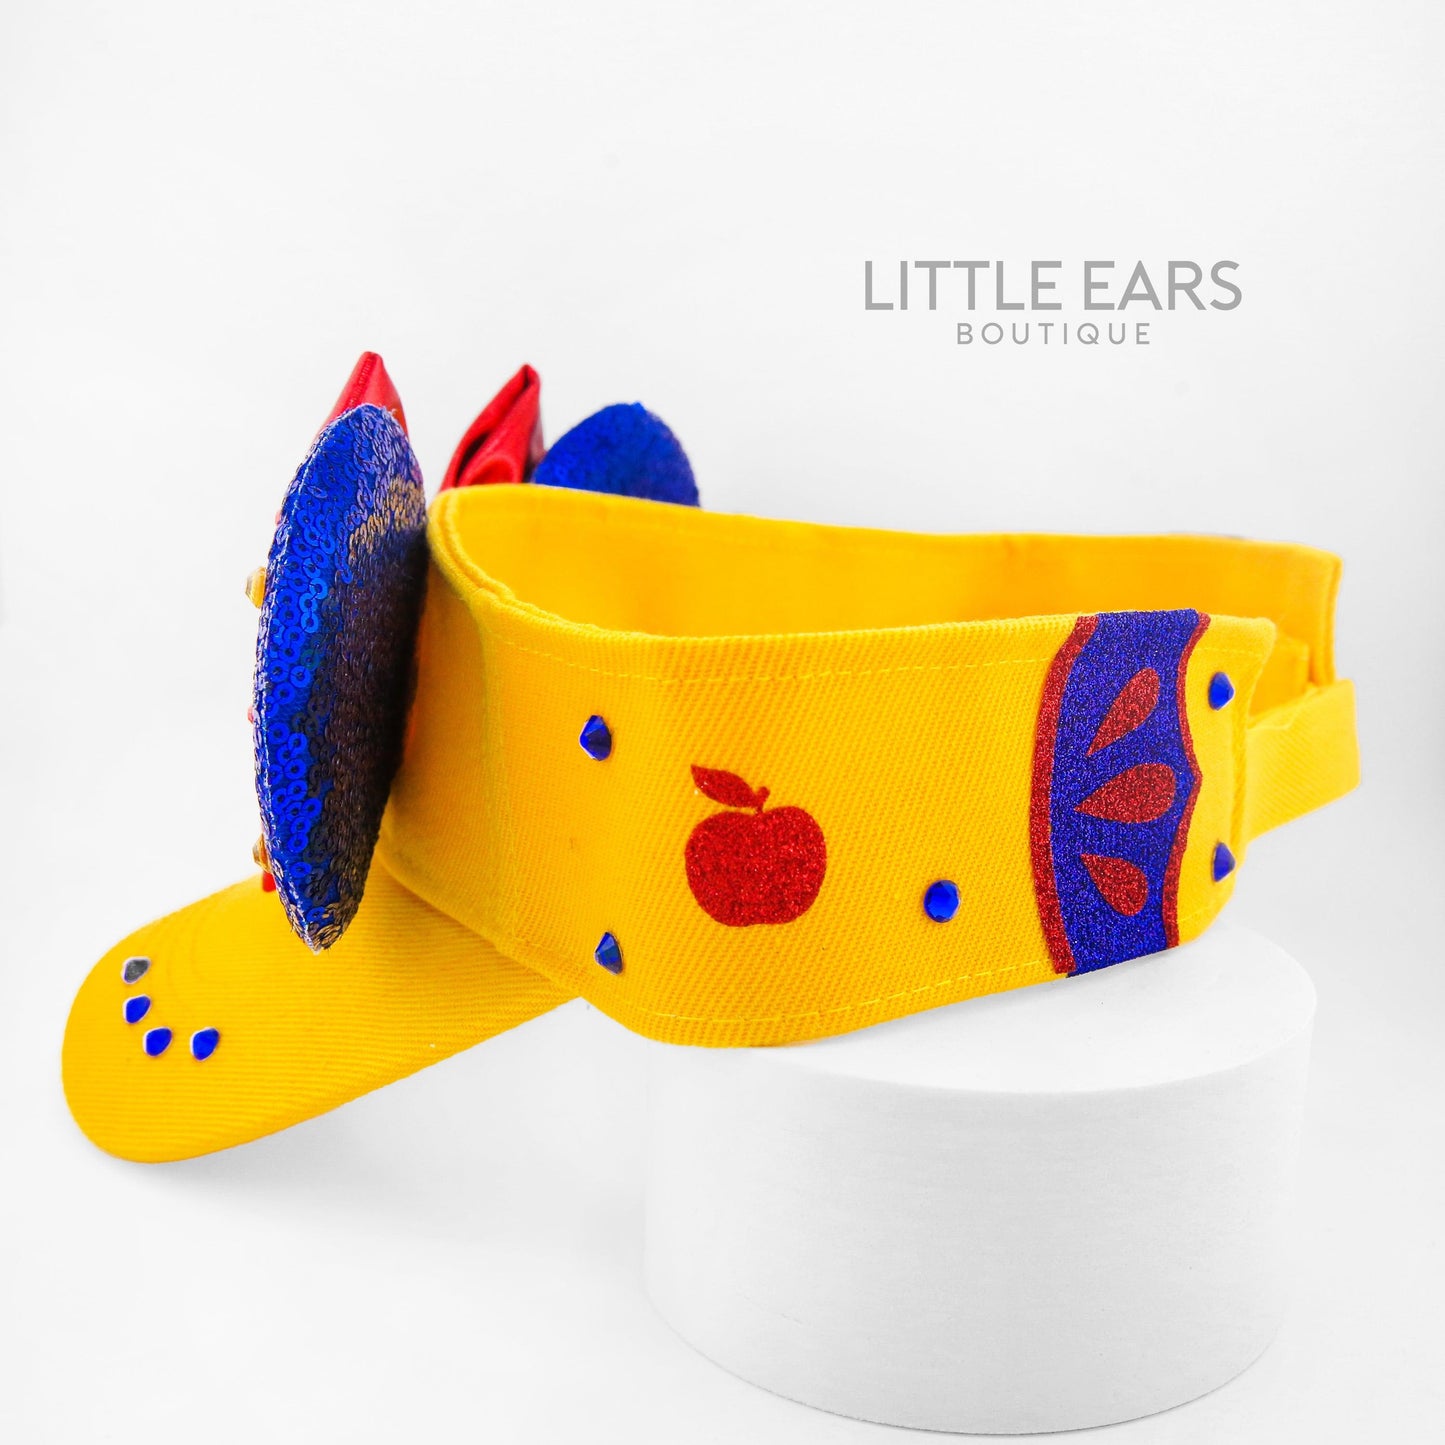 Snow White Mickey Visor- mickey ears disney headband mouse